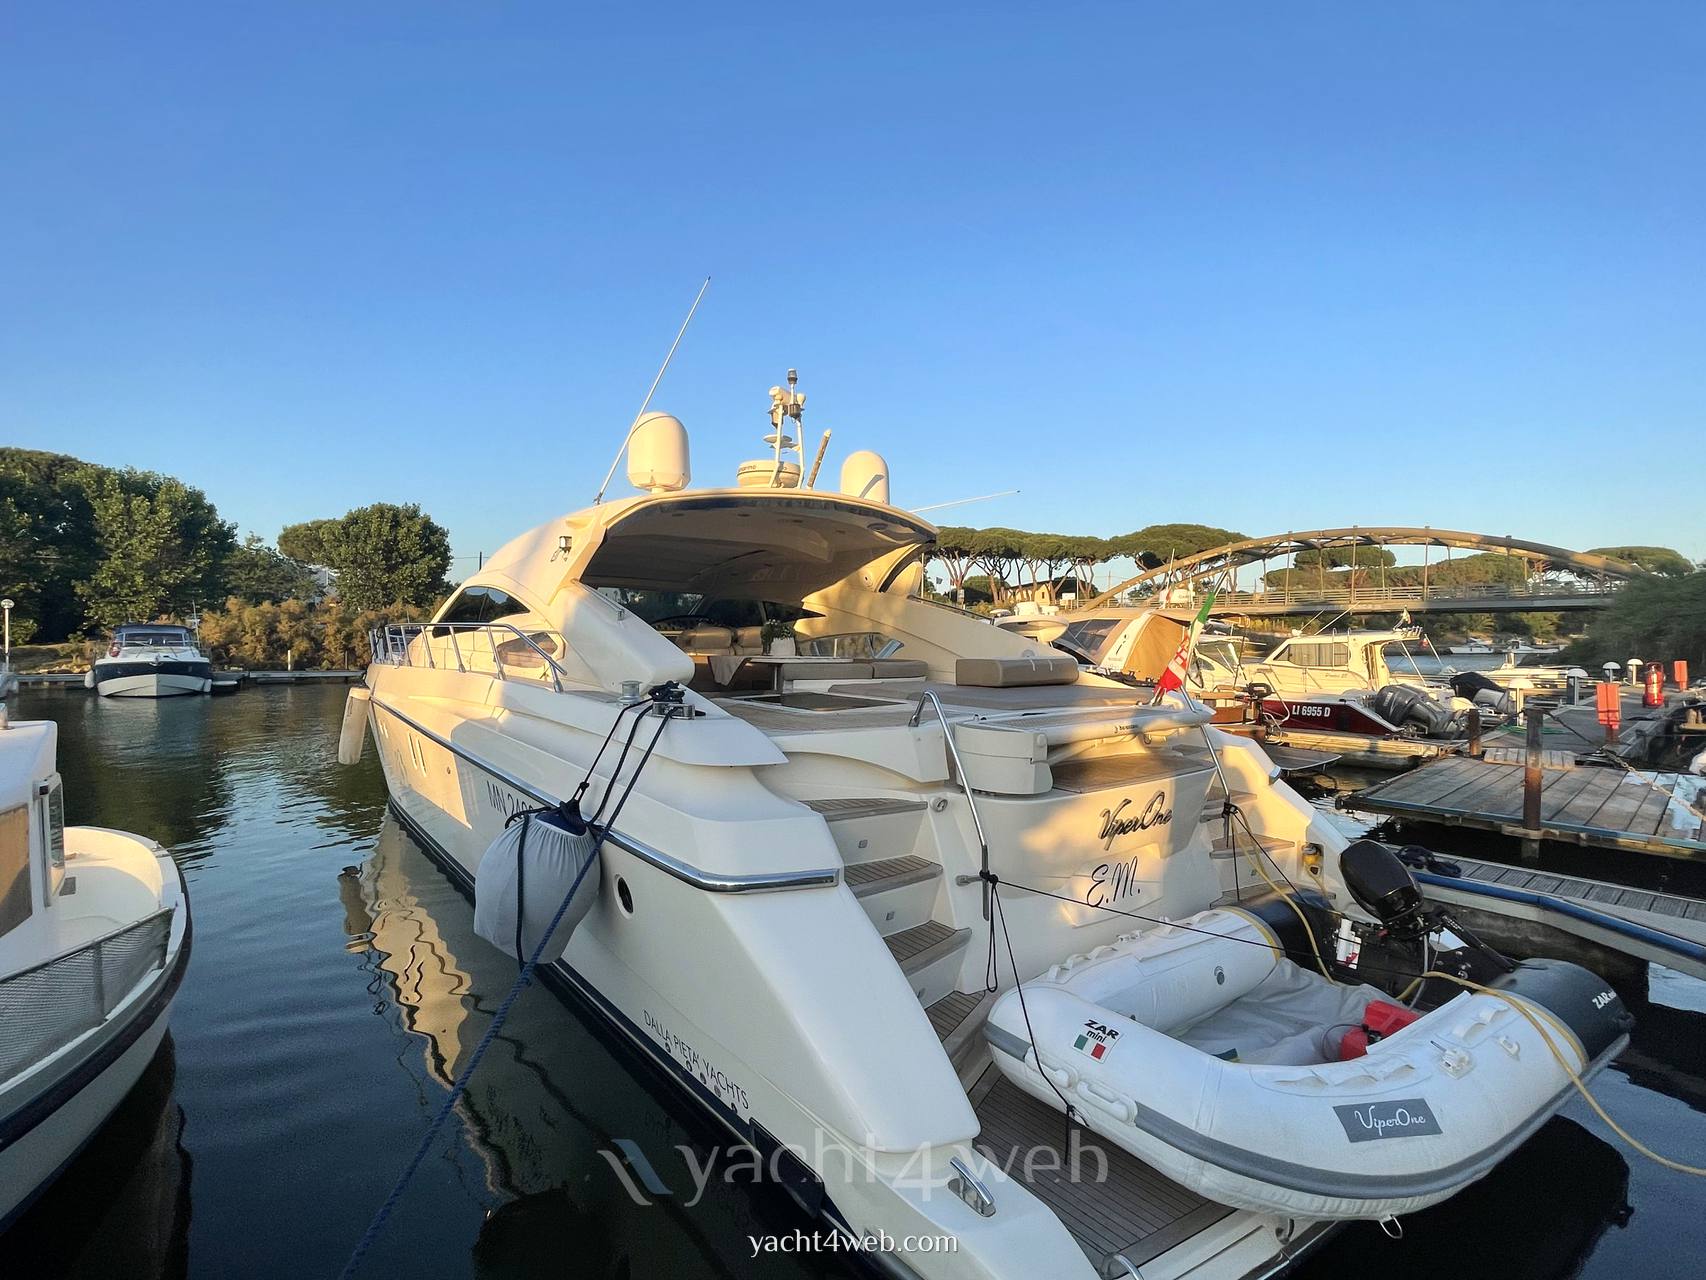 Dalla pieta' yachts Dp 58 ht motor boat